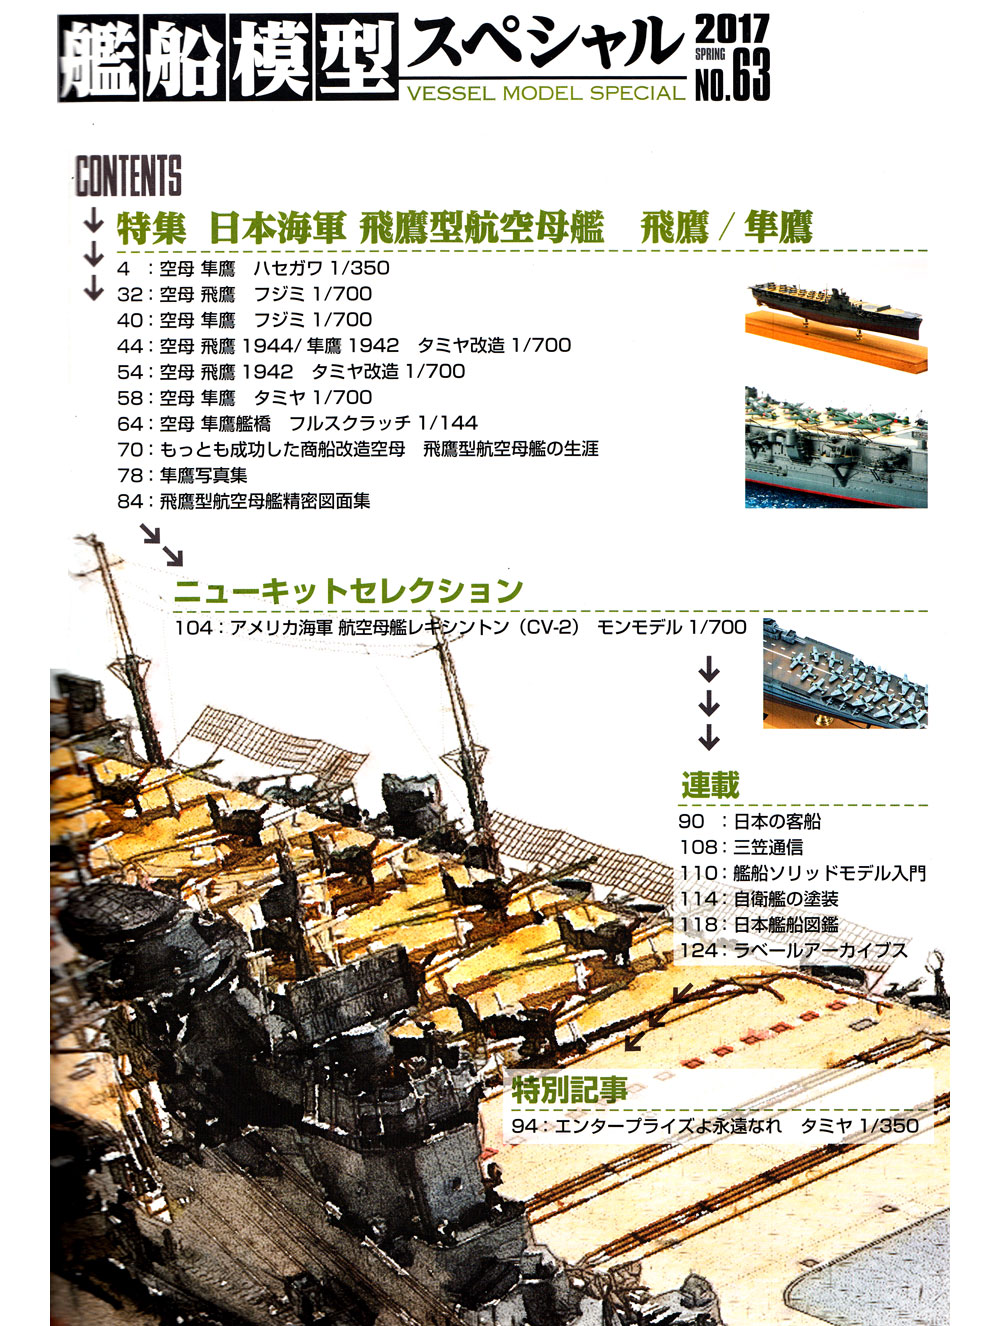 艦船模型スペシャル No.63 日本海軍 飛鷹型航空母艦 本 (モデルアート 艦船模型スペシャル No.063) 商品画像_1